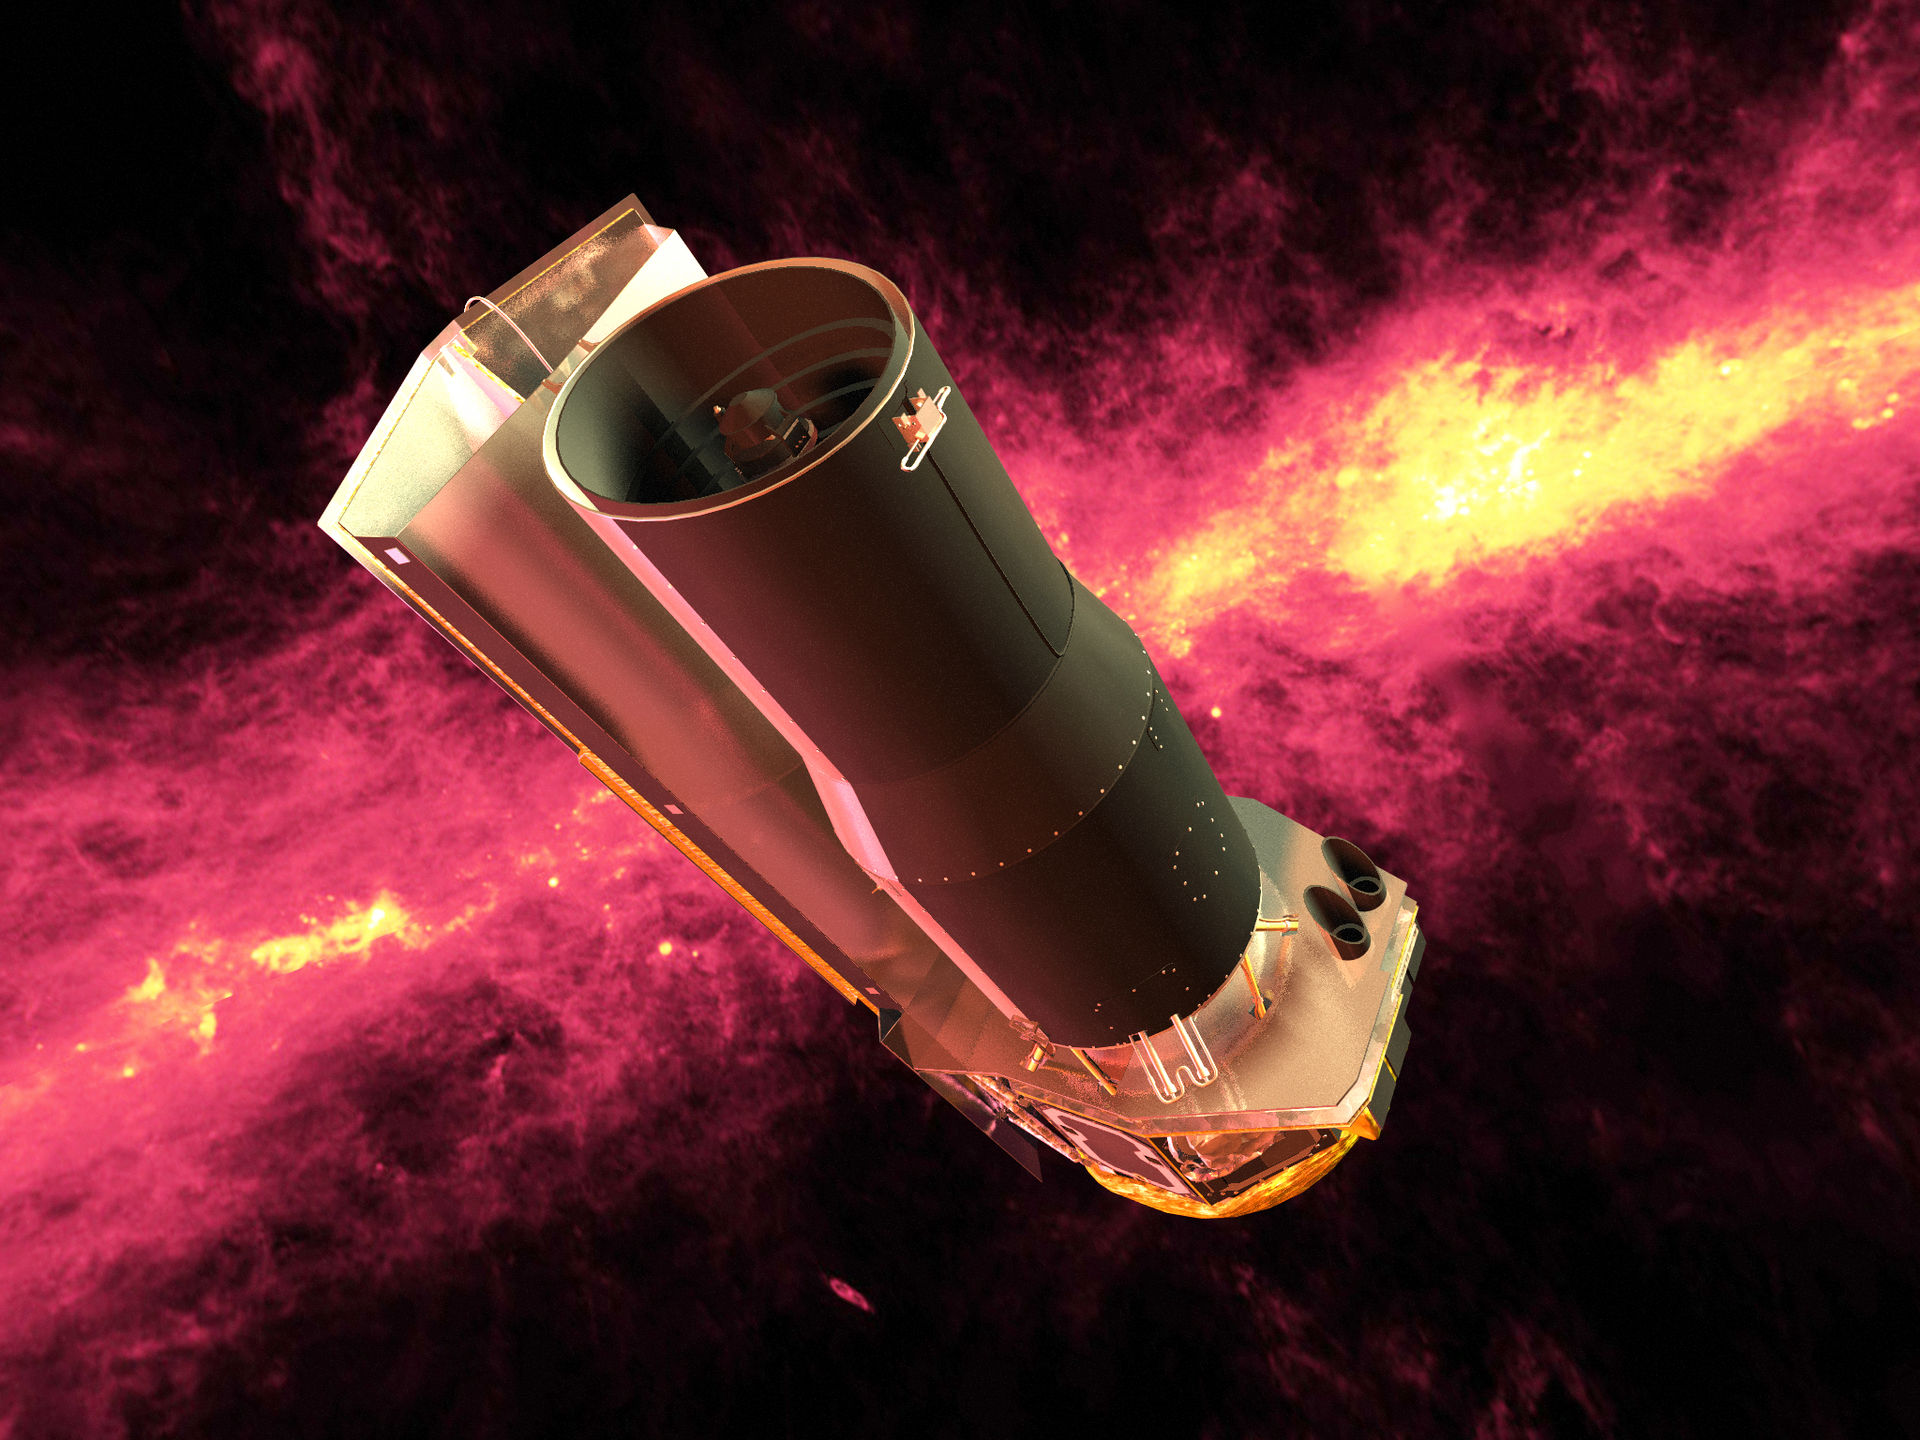 Le télescope spatial Spitzer porte des instruments sensibles aux infrarouges mis en orbite par la Nasa en 2003. Depuis 2009, à bout d'helium liquide (nécessaire au refroidissement), seuls deux instruments sont encore fonctionnels. © Nasa